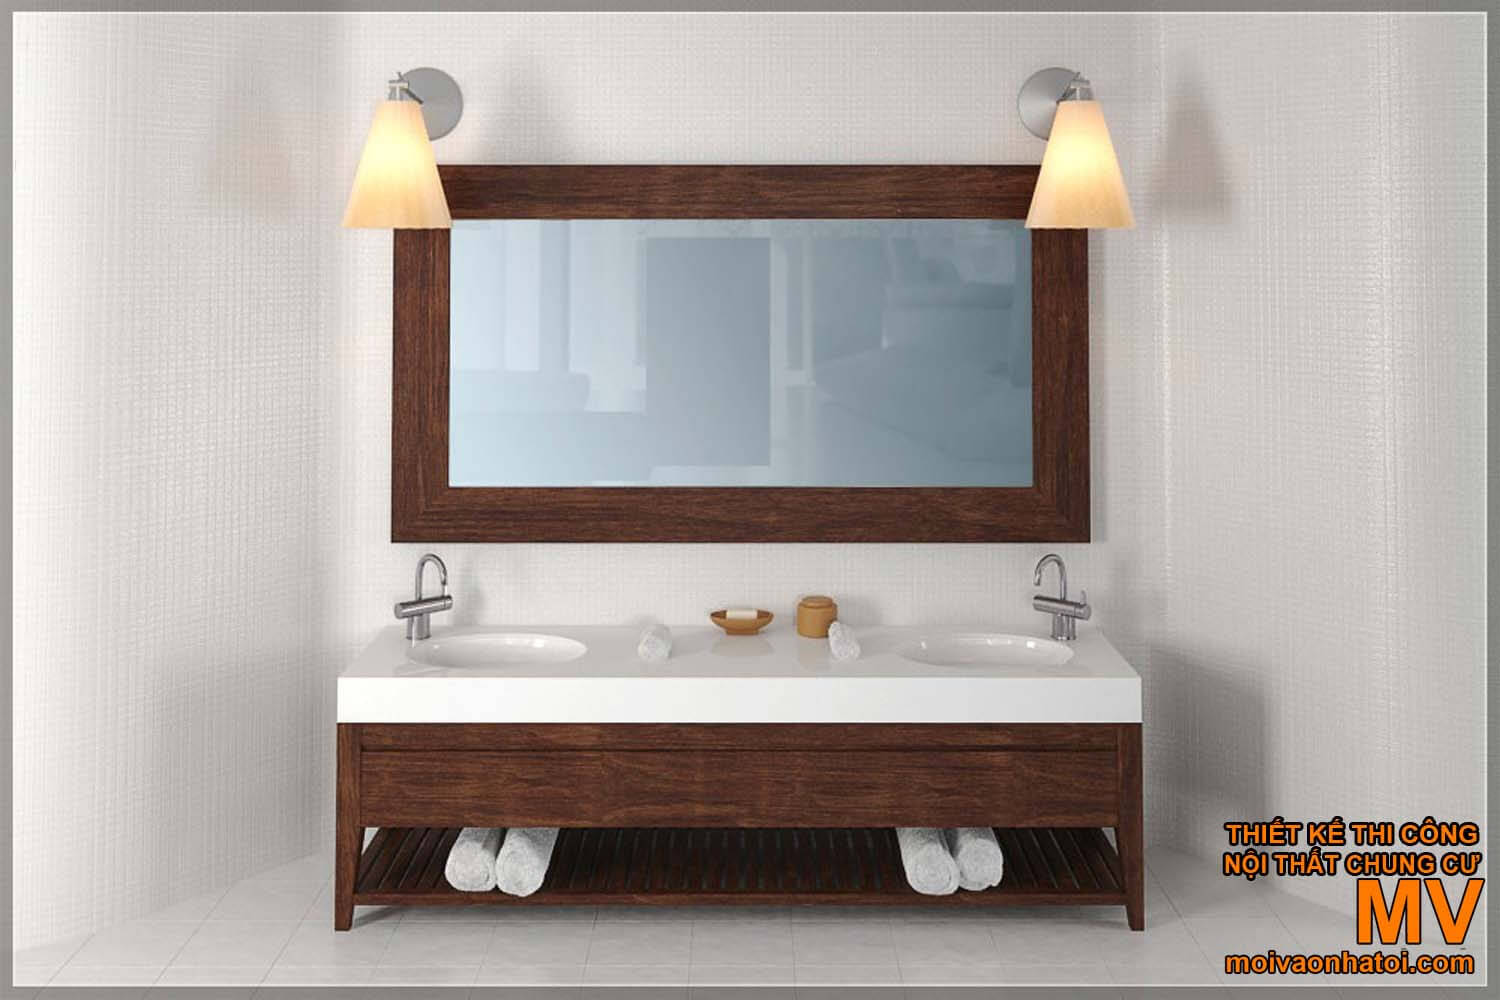 lavabo rửa mặt, thiết kế nhà tắm đẹp hiện đại